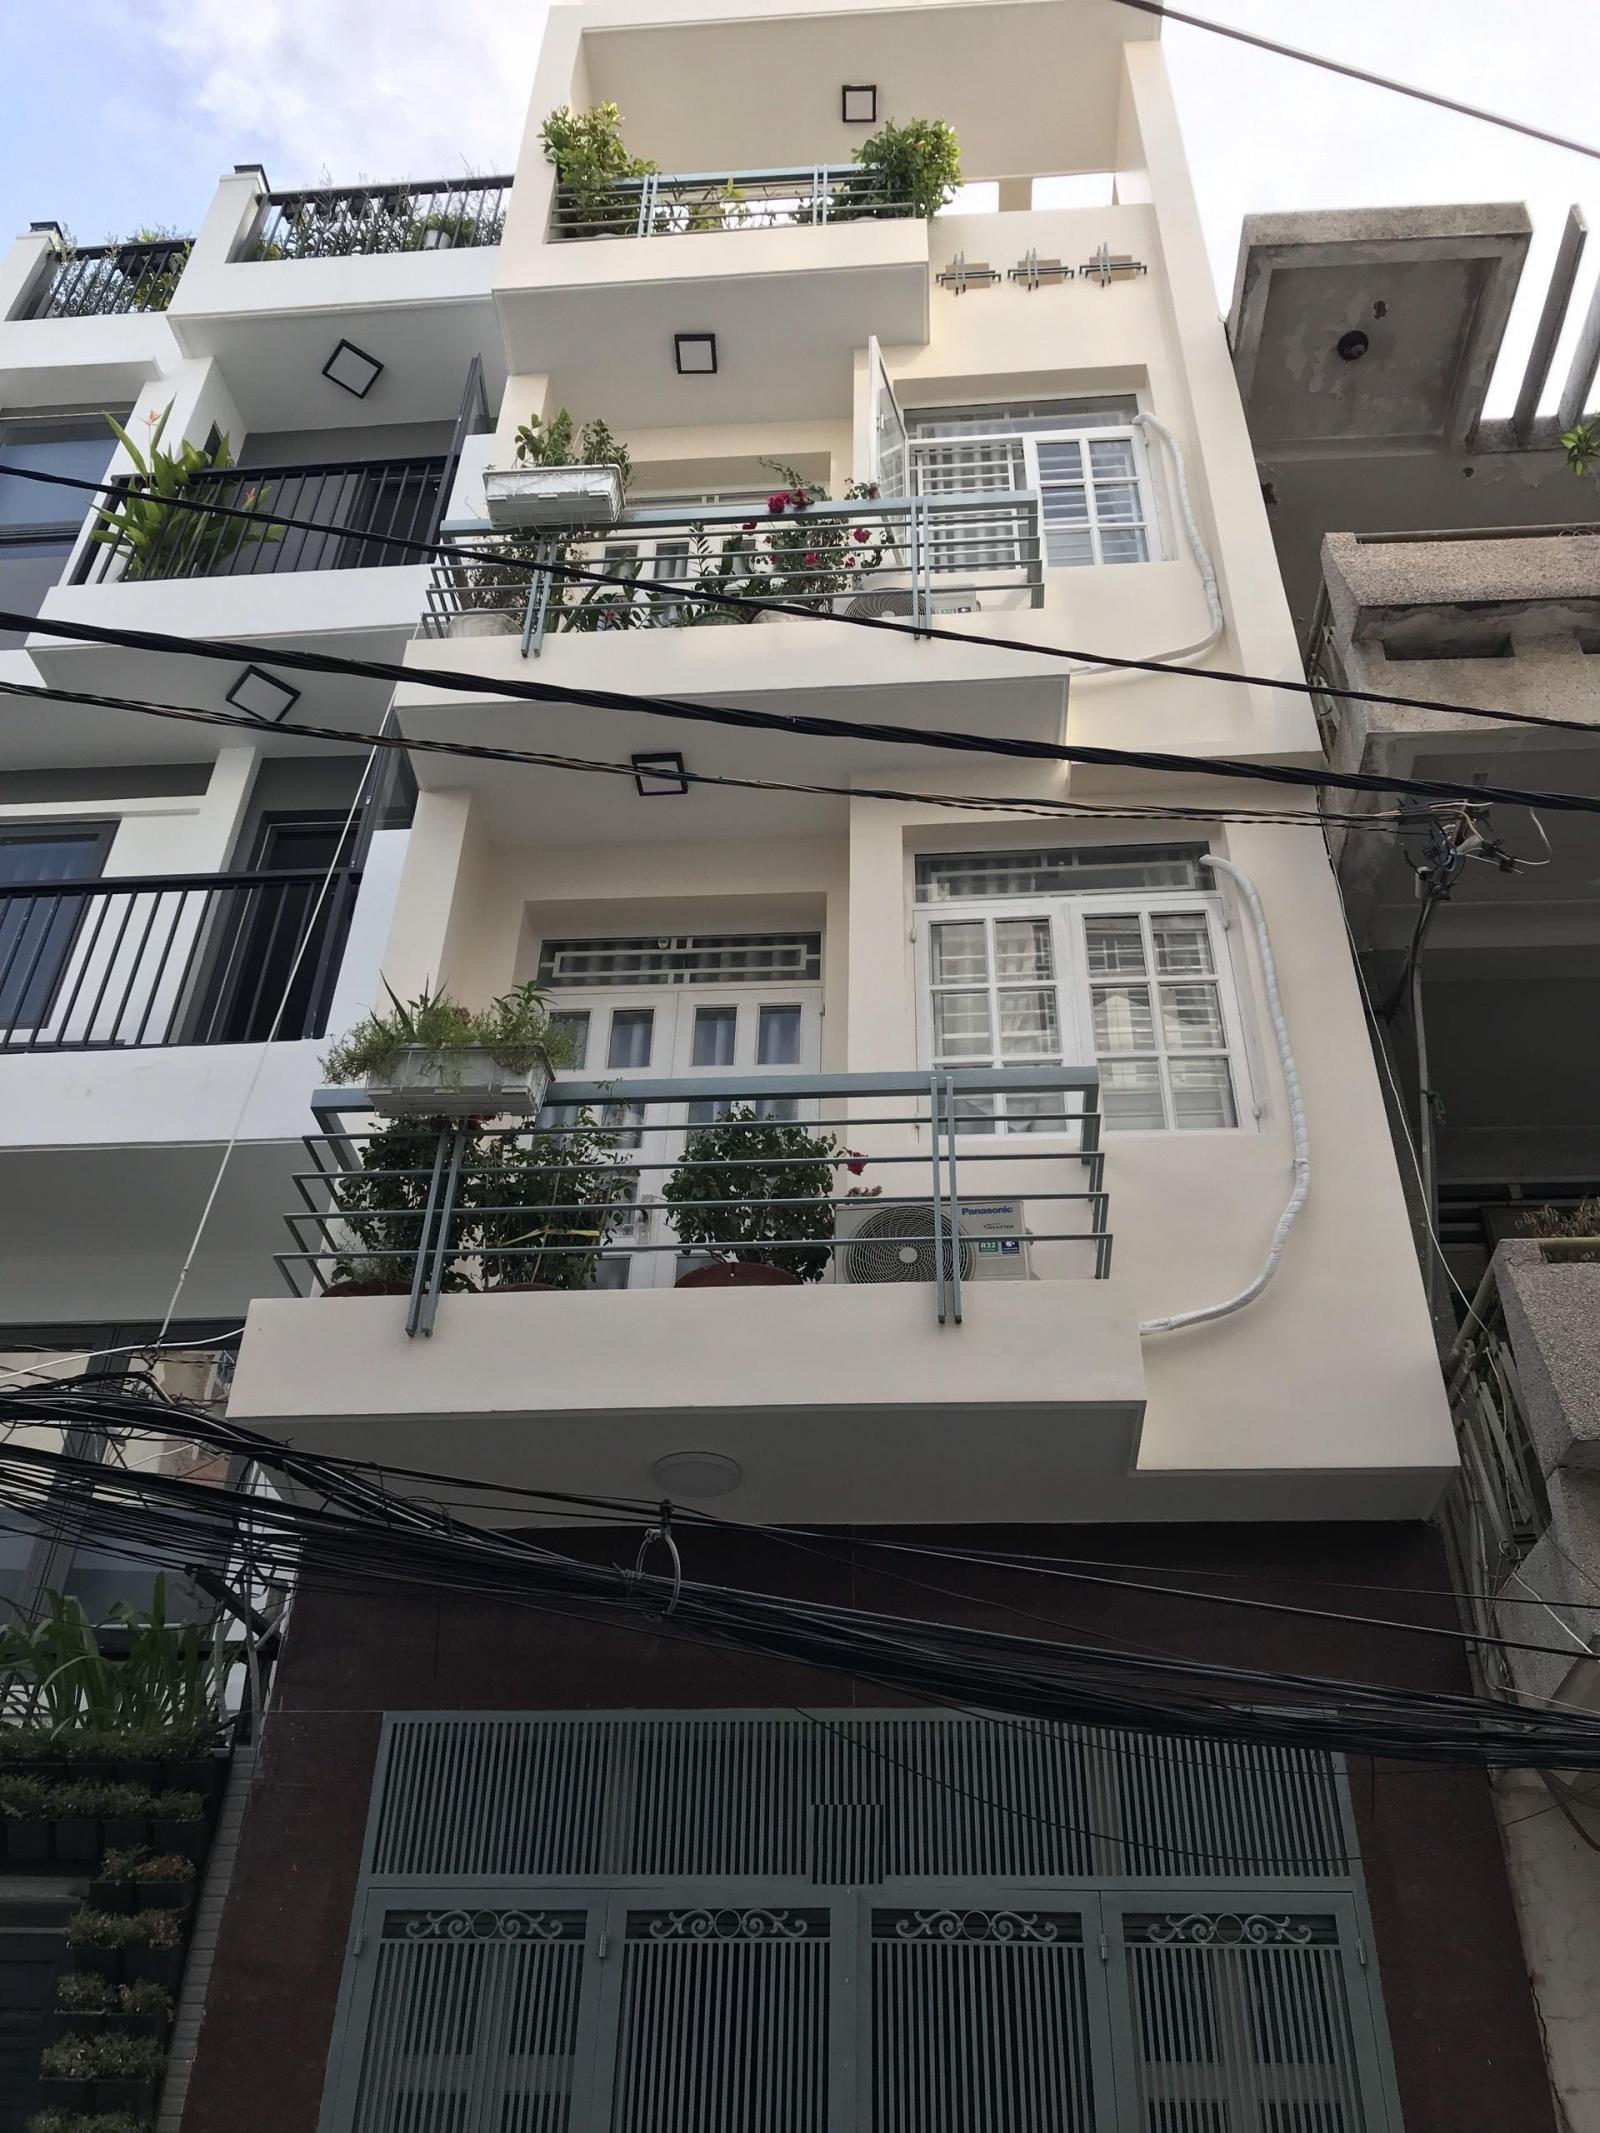 Định cư cần bán gấp nhà Lê Văn Sỹ, Phú Nhuận trệt 2 lầu sân thượng 43m2.